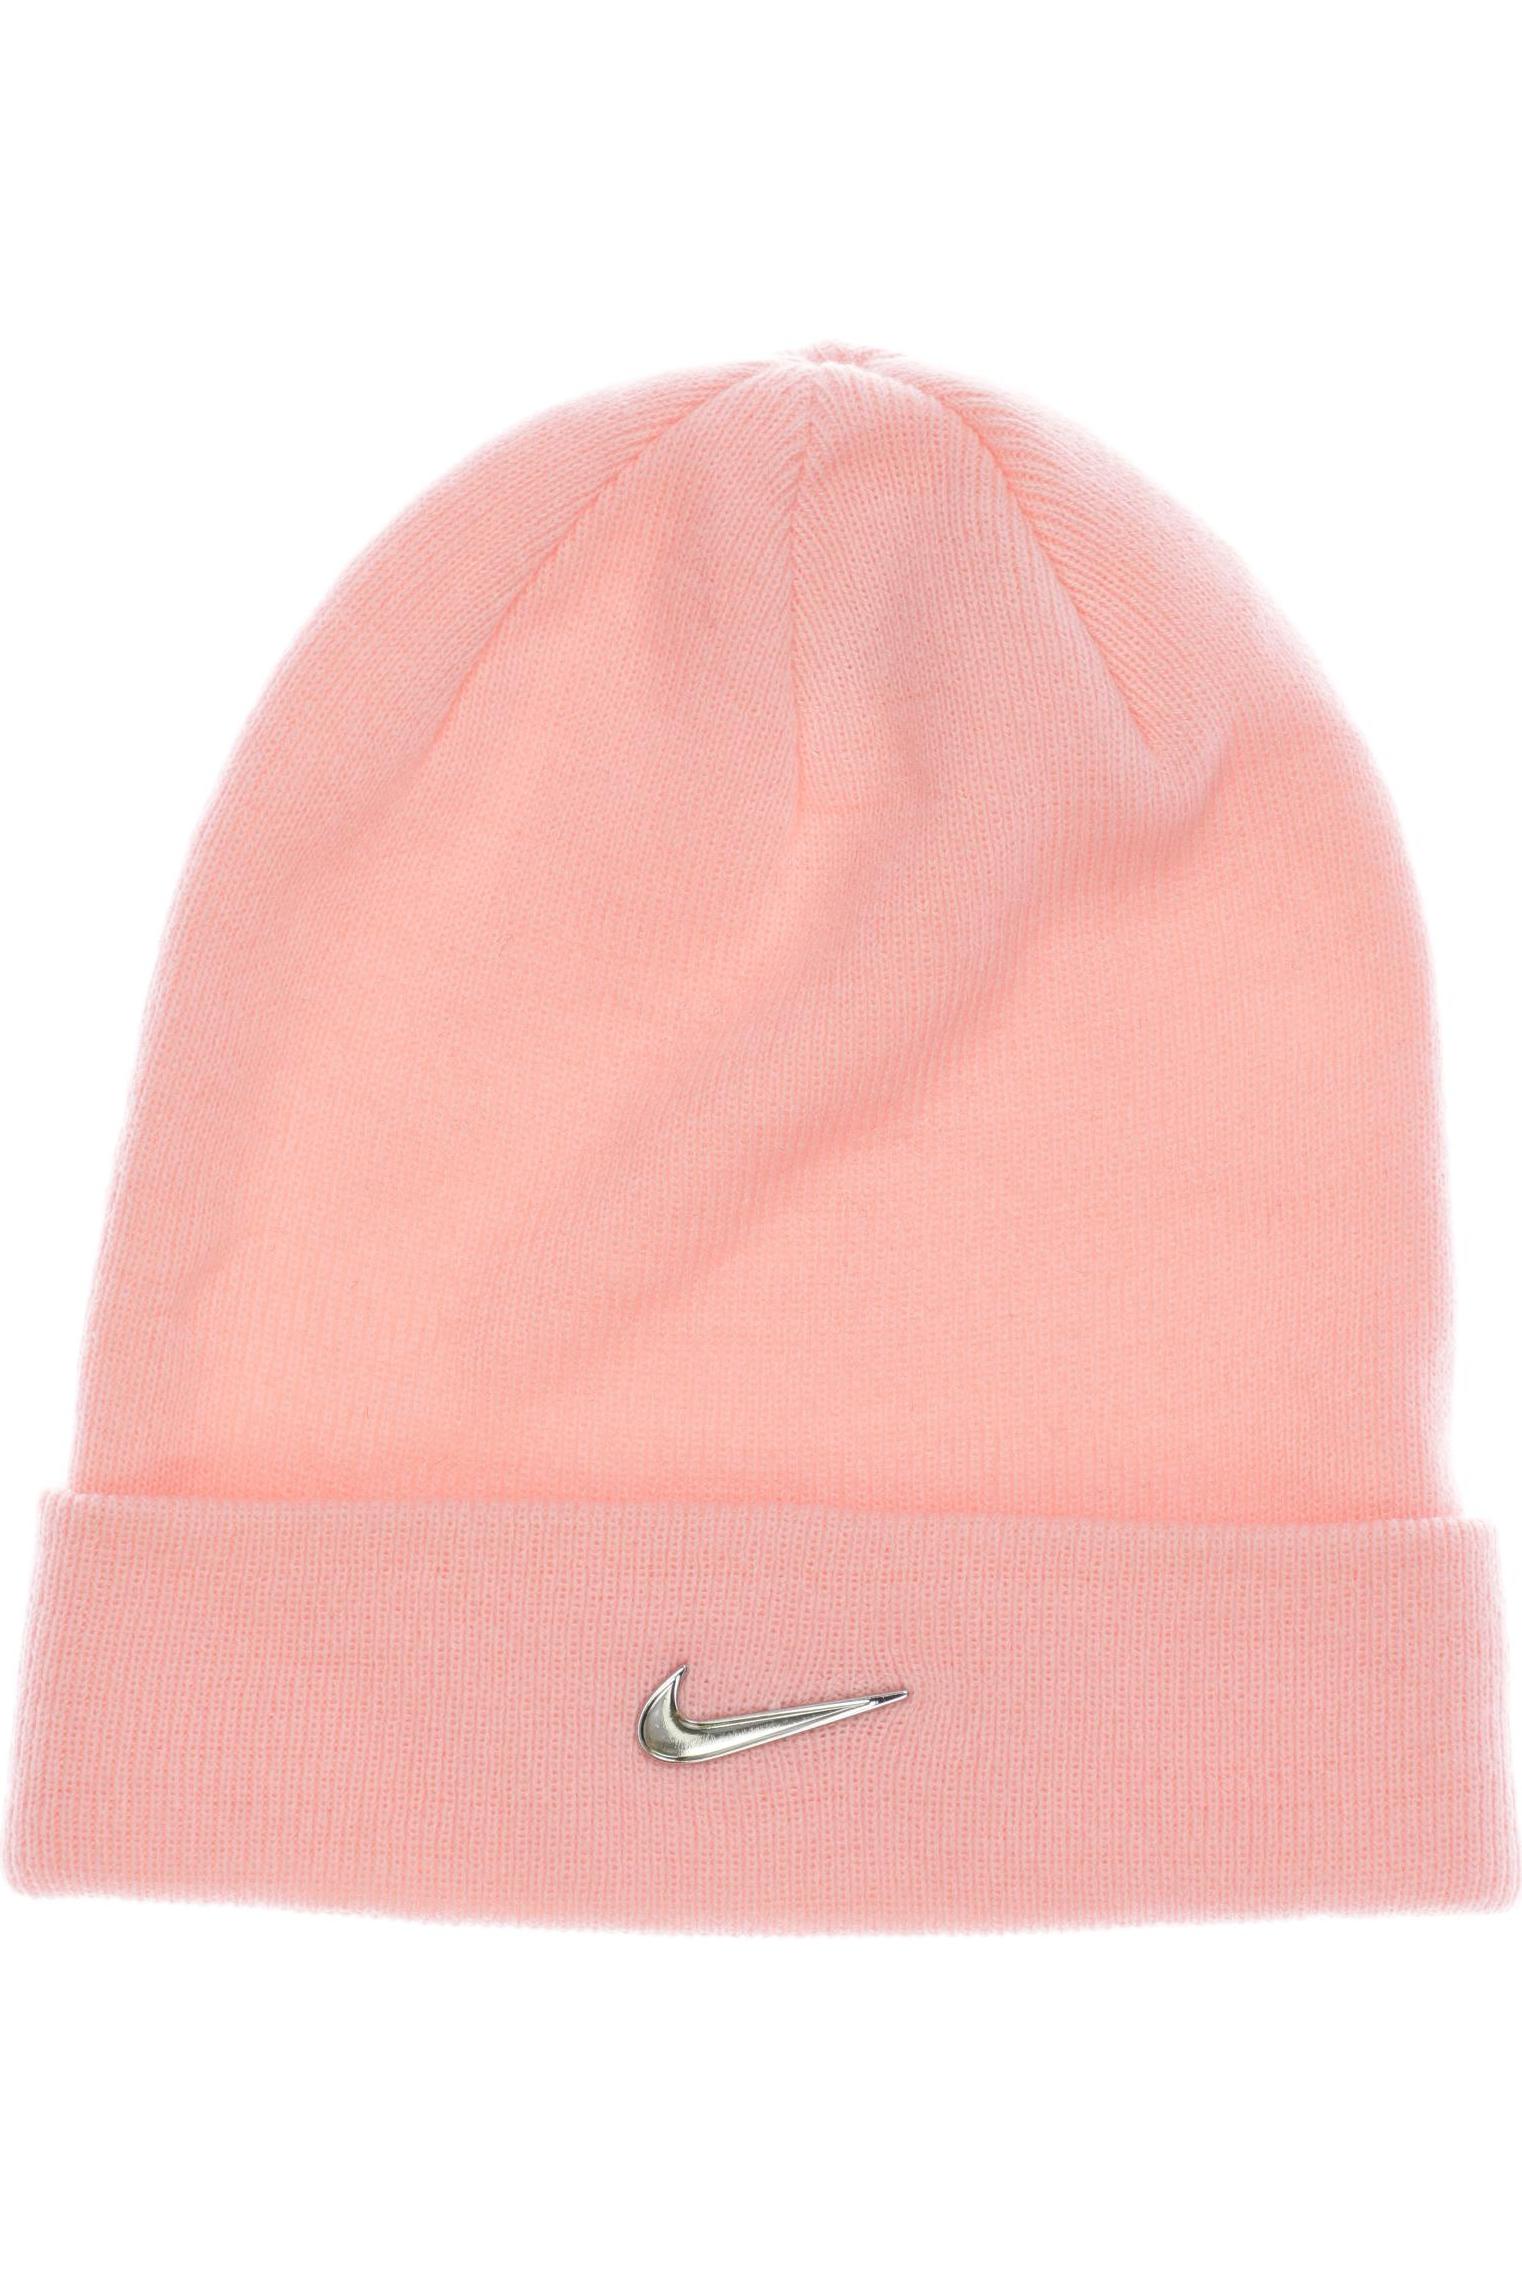 Nike Damen Hut/Mütze, pink von Nike